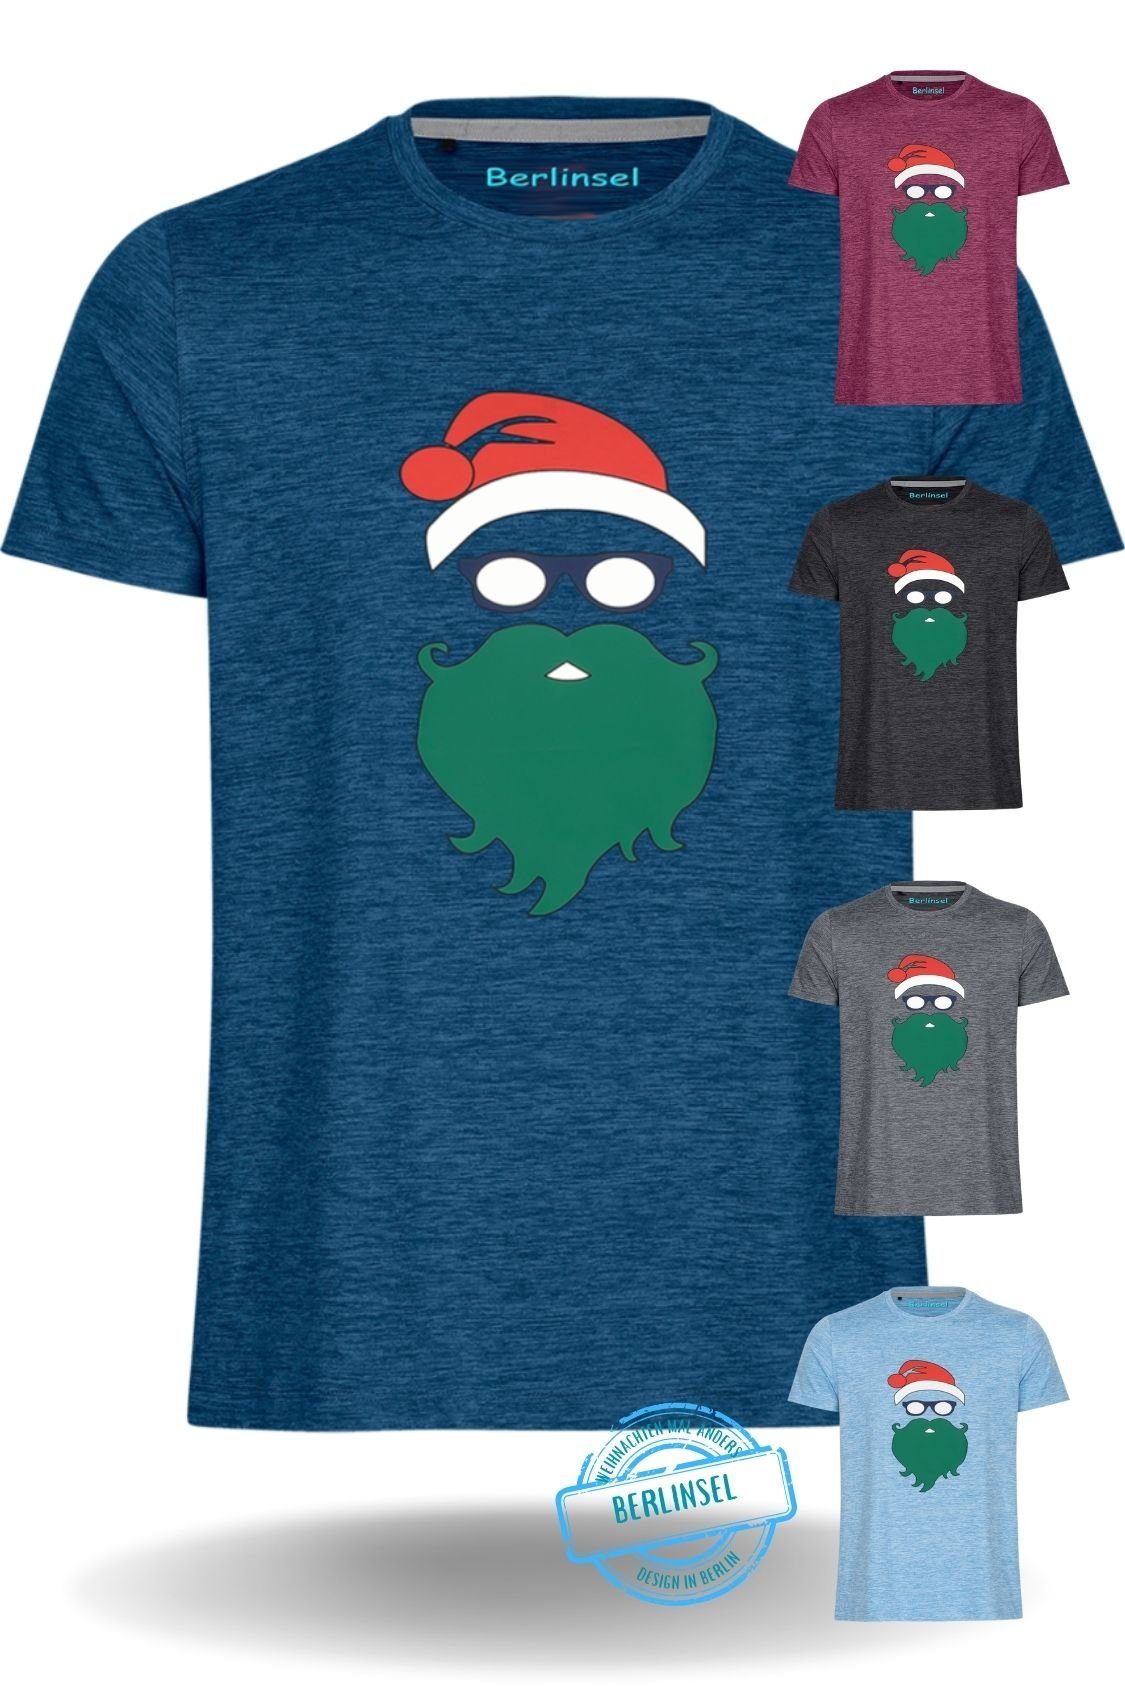 Weihnachtsfeier, Herren Printshirt Weihnachtsoutfit Männer blau Weihnachtsshirt Weihnachtsgeschenk, Weihnachtsfoto Berlinsel T-Shirt